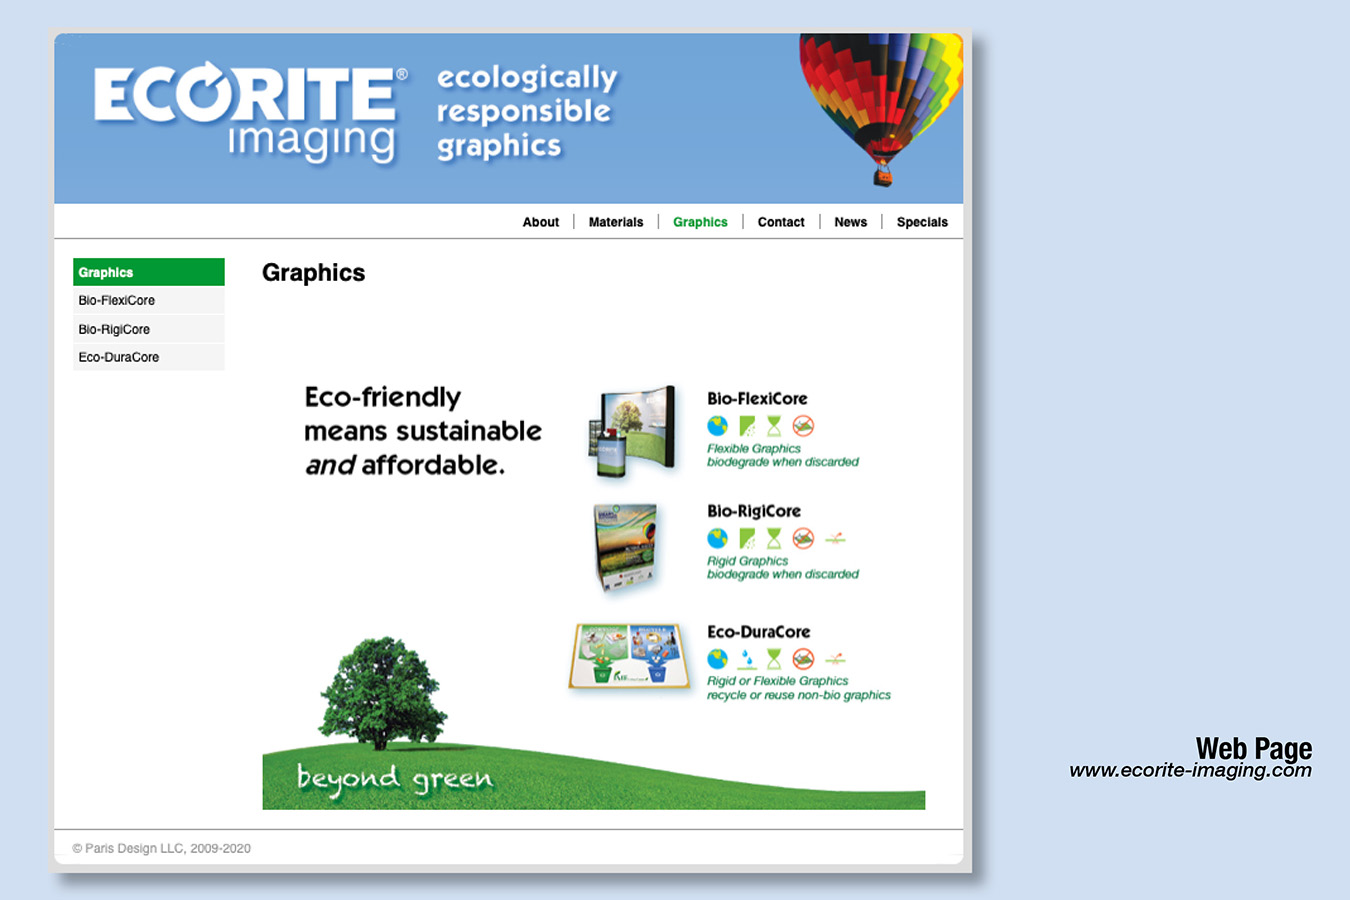 Ecorite 2 : Ecorite Graphic Panel Composition Options: Bio-FlexiCor, Bio-RigiCor, Eco-duracor